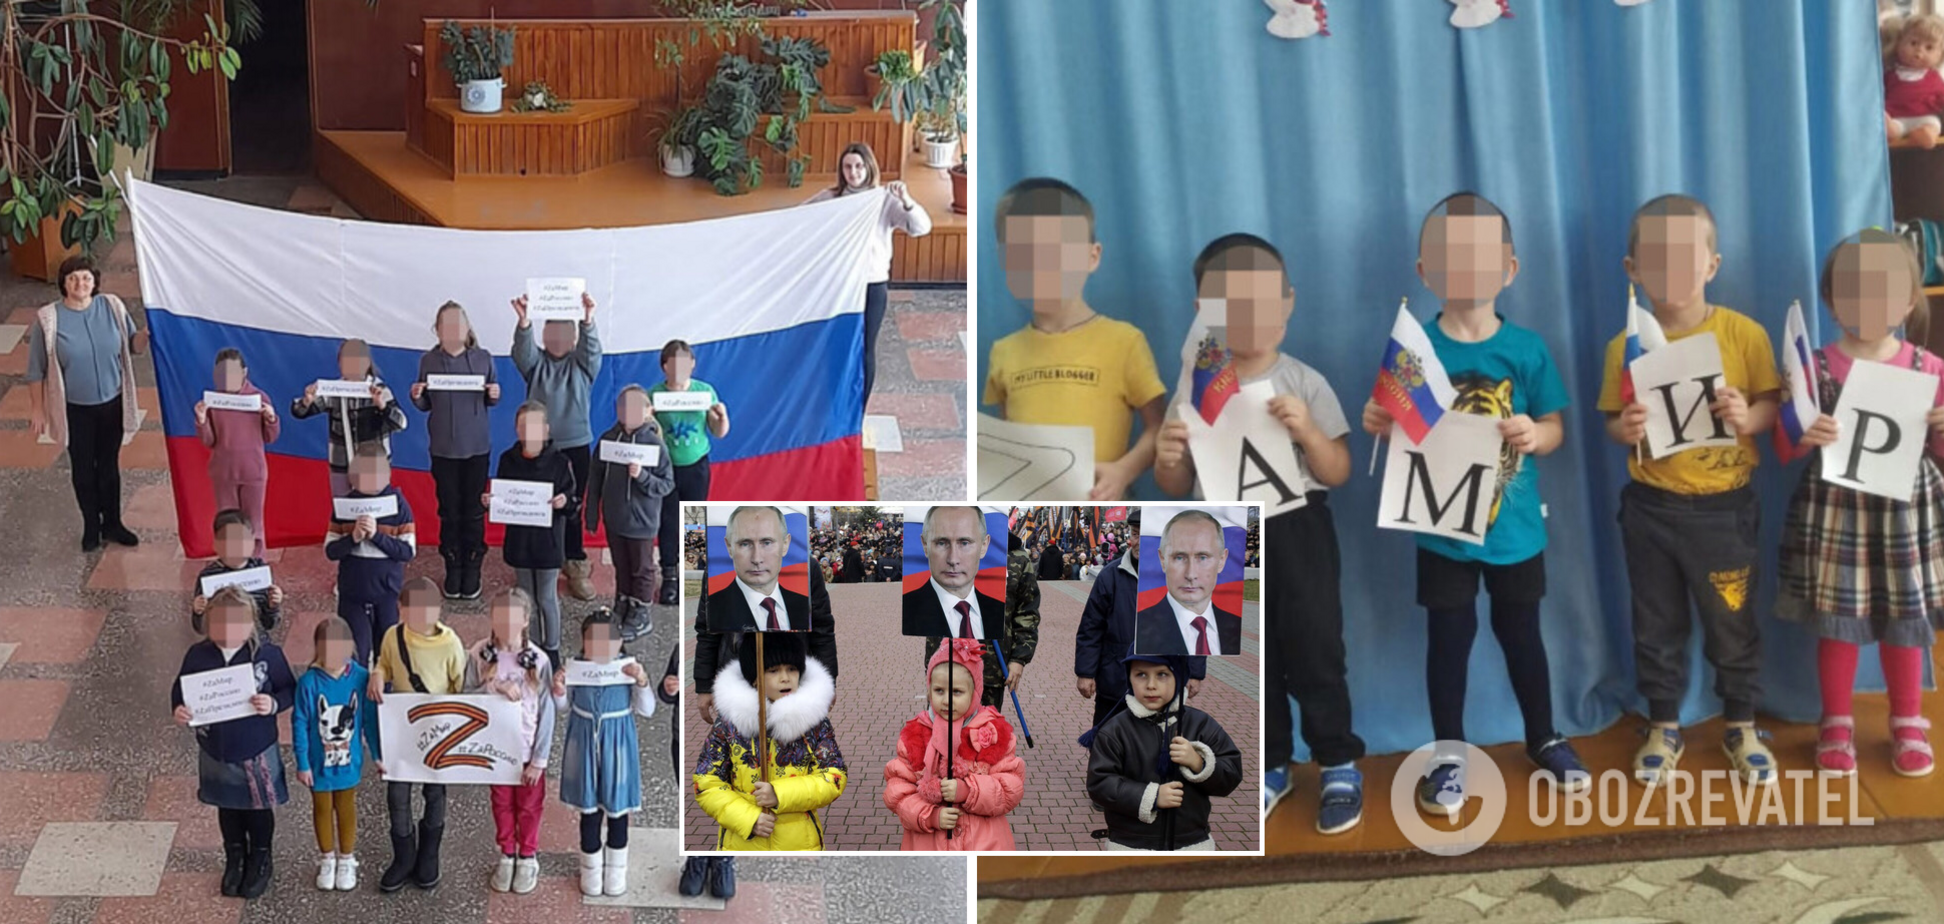 Россия привлекает детей к поддержке своих террористических действий: мировое сообщество призвали это остановить